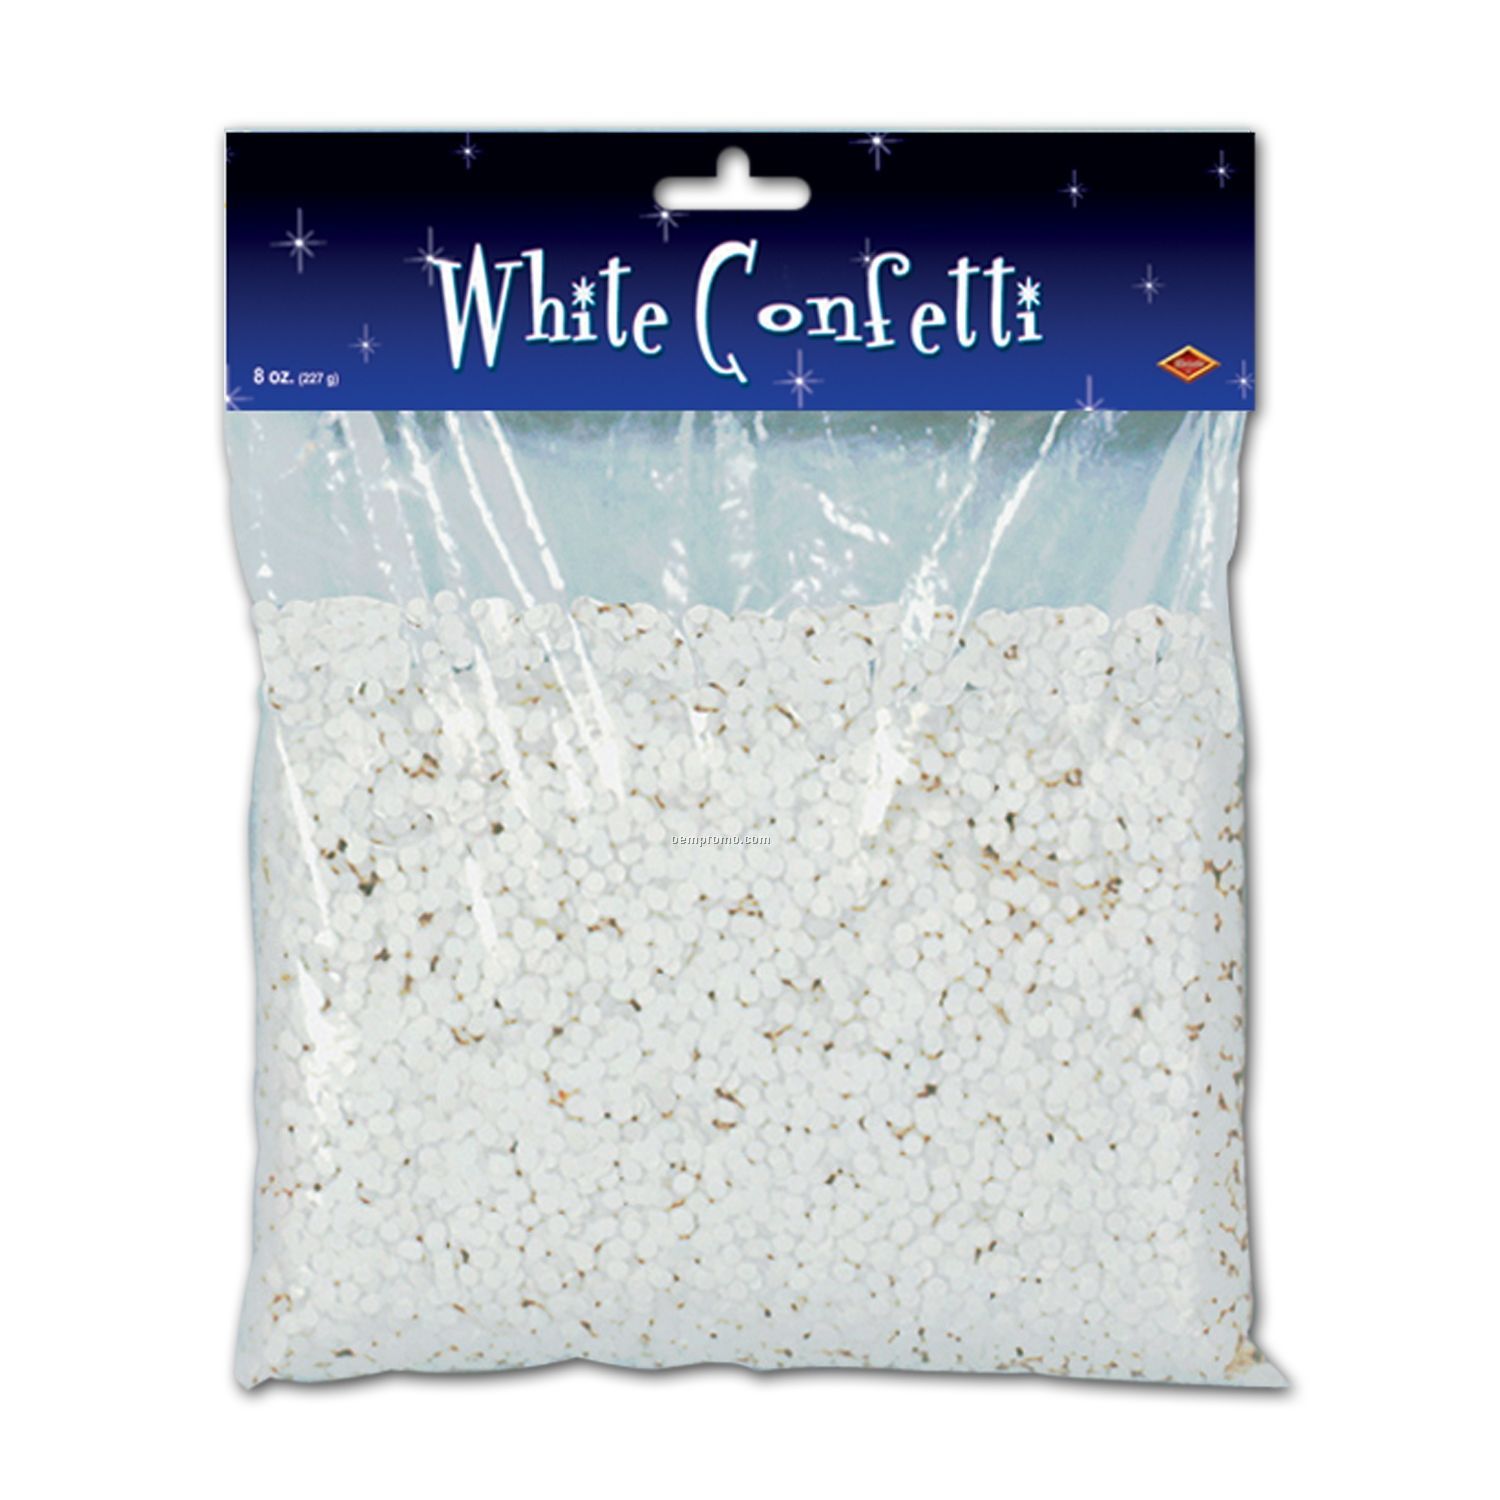 White Confetti